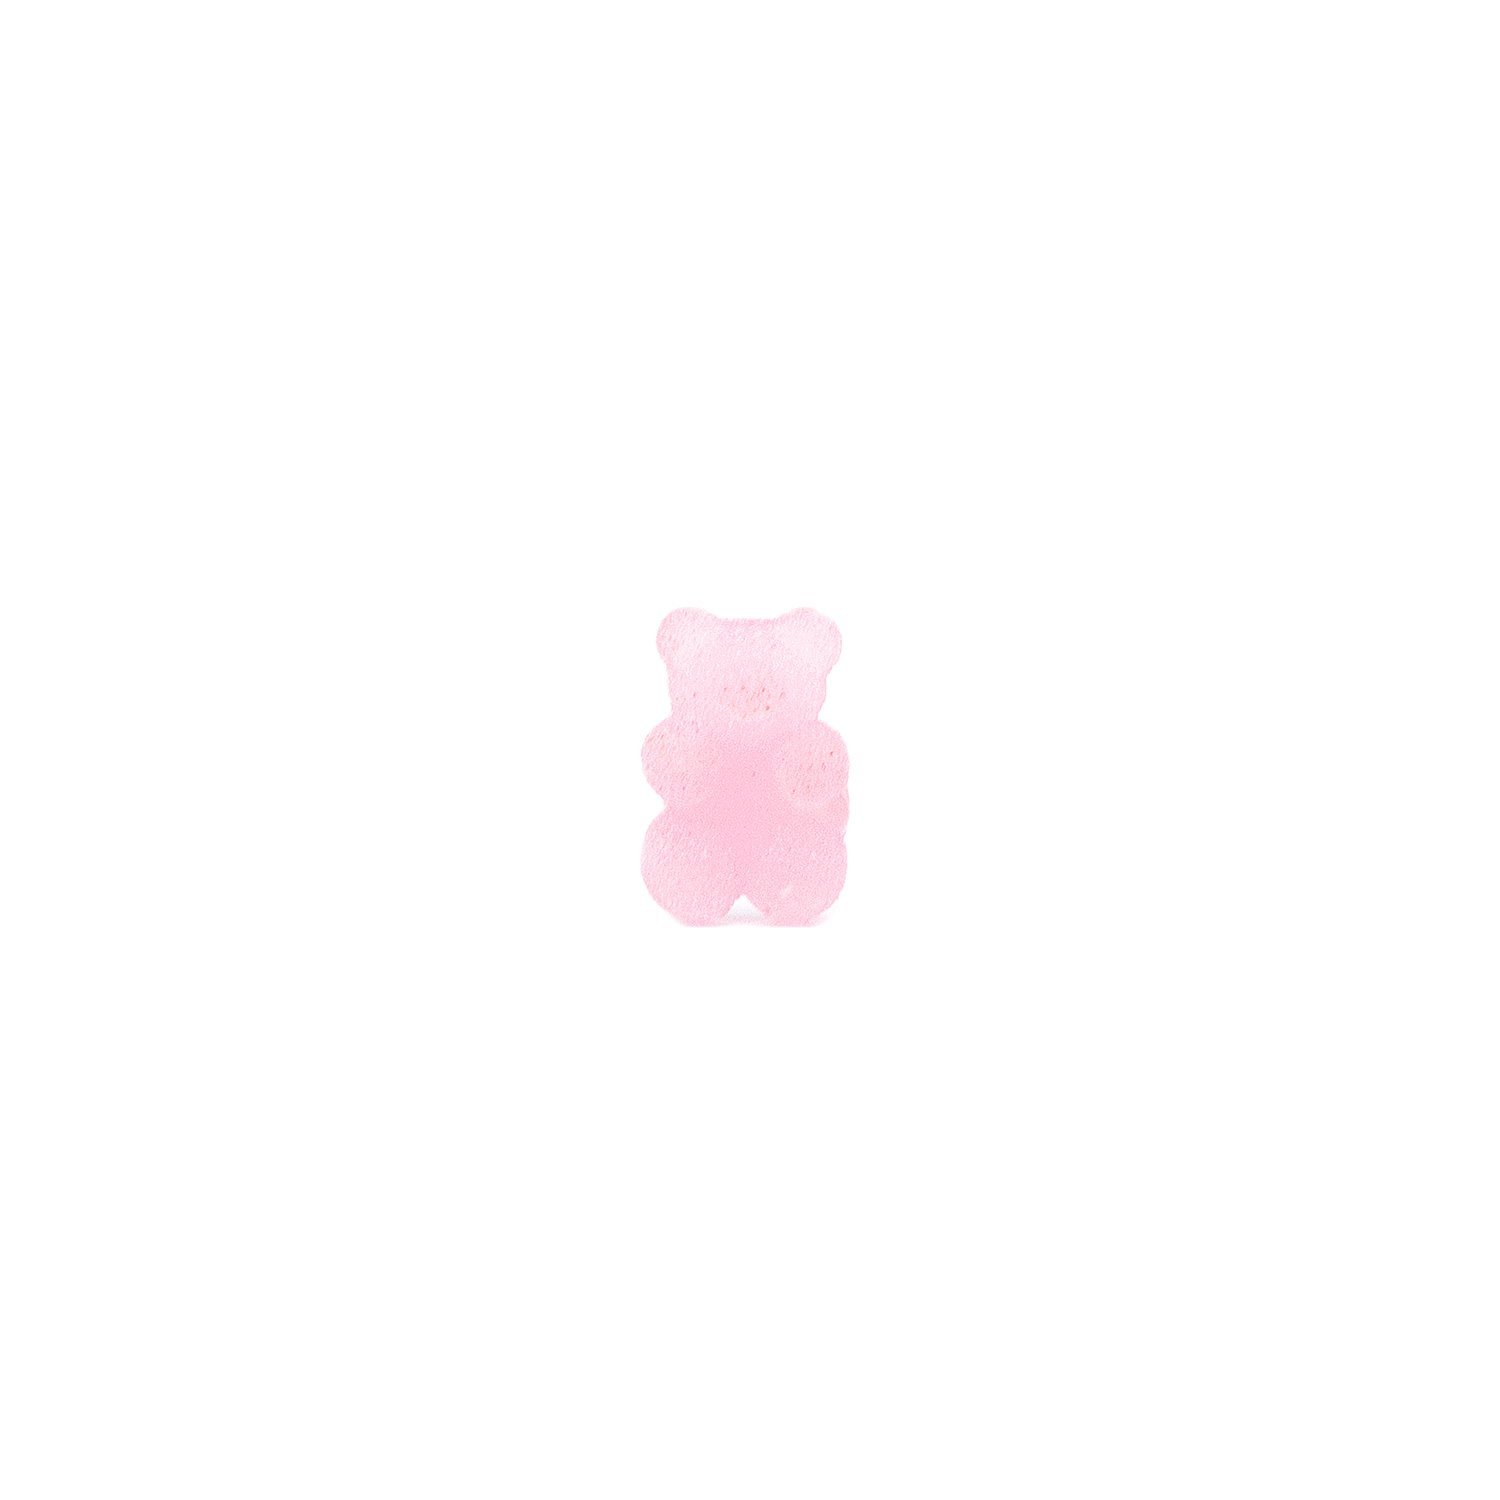 Наклейка MiZi Медведь для смартфона, розовый 01 (218473)